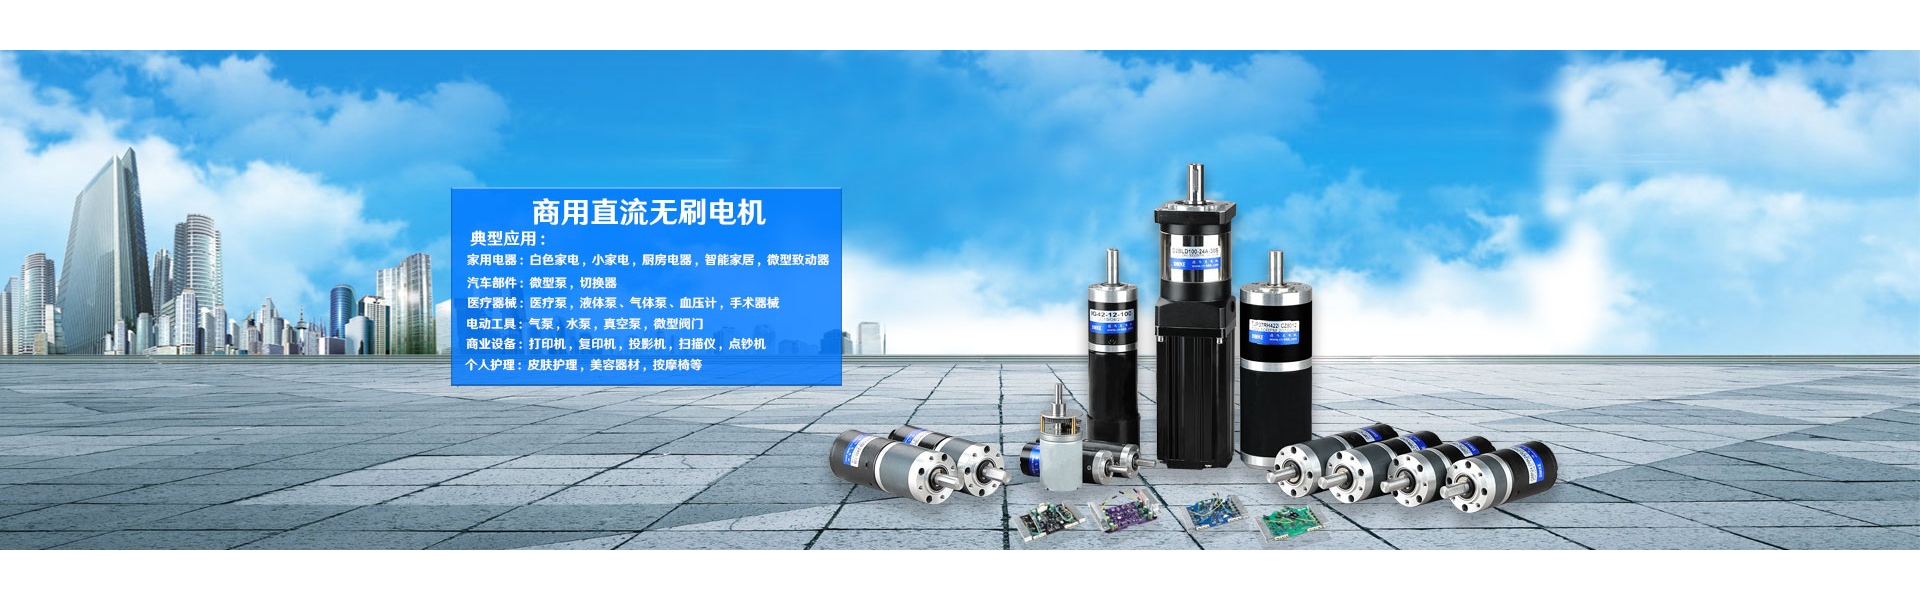 มอเตอร์, มอเตอร์ dc, มอเตอร์ brushless dc,Dongguan Joy Machinery Manufacturing Co.,Ltd.